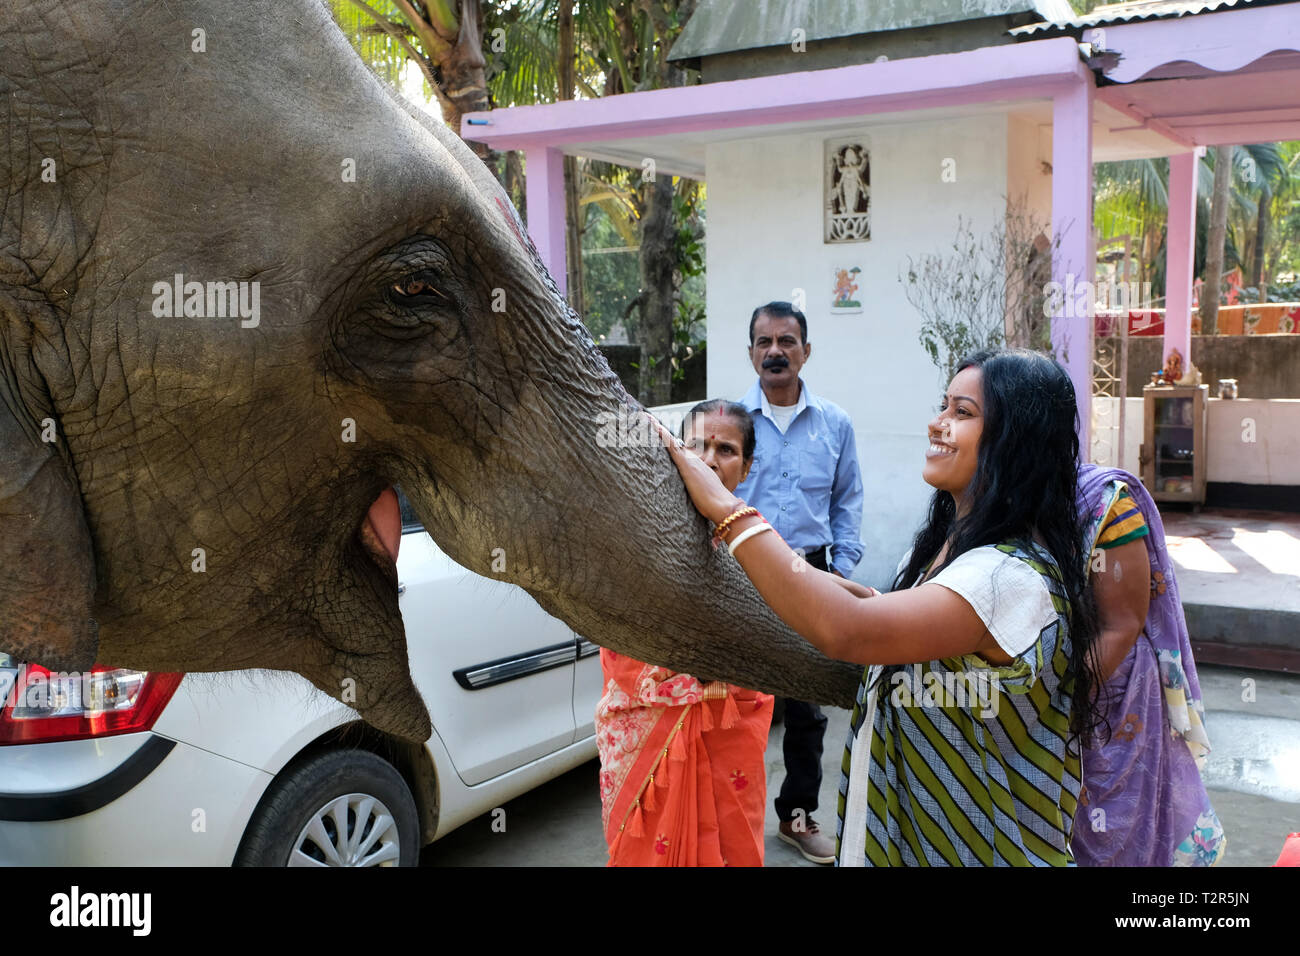 Elephant è adorato da una famiglia indù della Cattedrale di Tezpur, stato di Assam, in India --- Elefant wird verehrt, Hindu-Familie bei Tezpur, Bundesstaat Assam, Indien Foto Stock